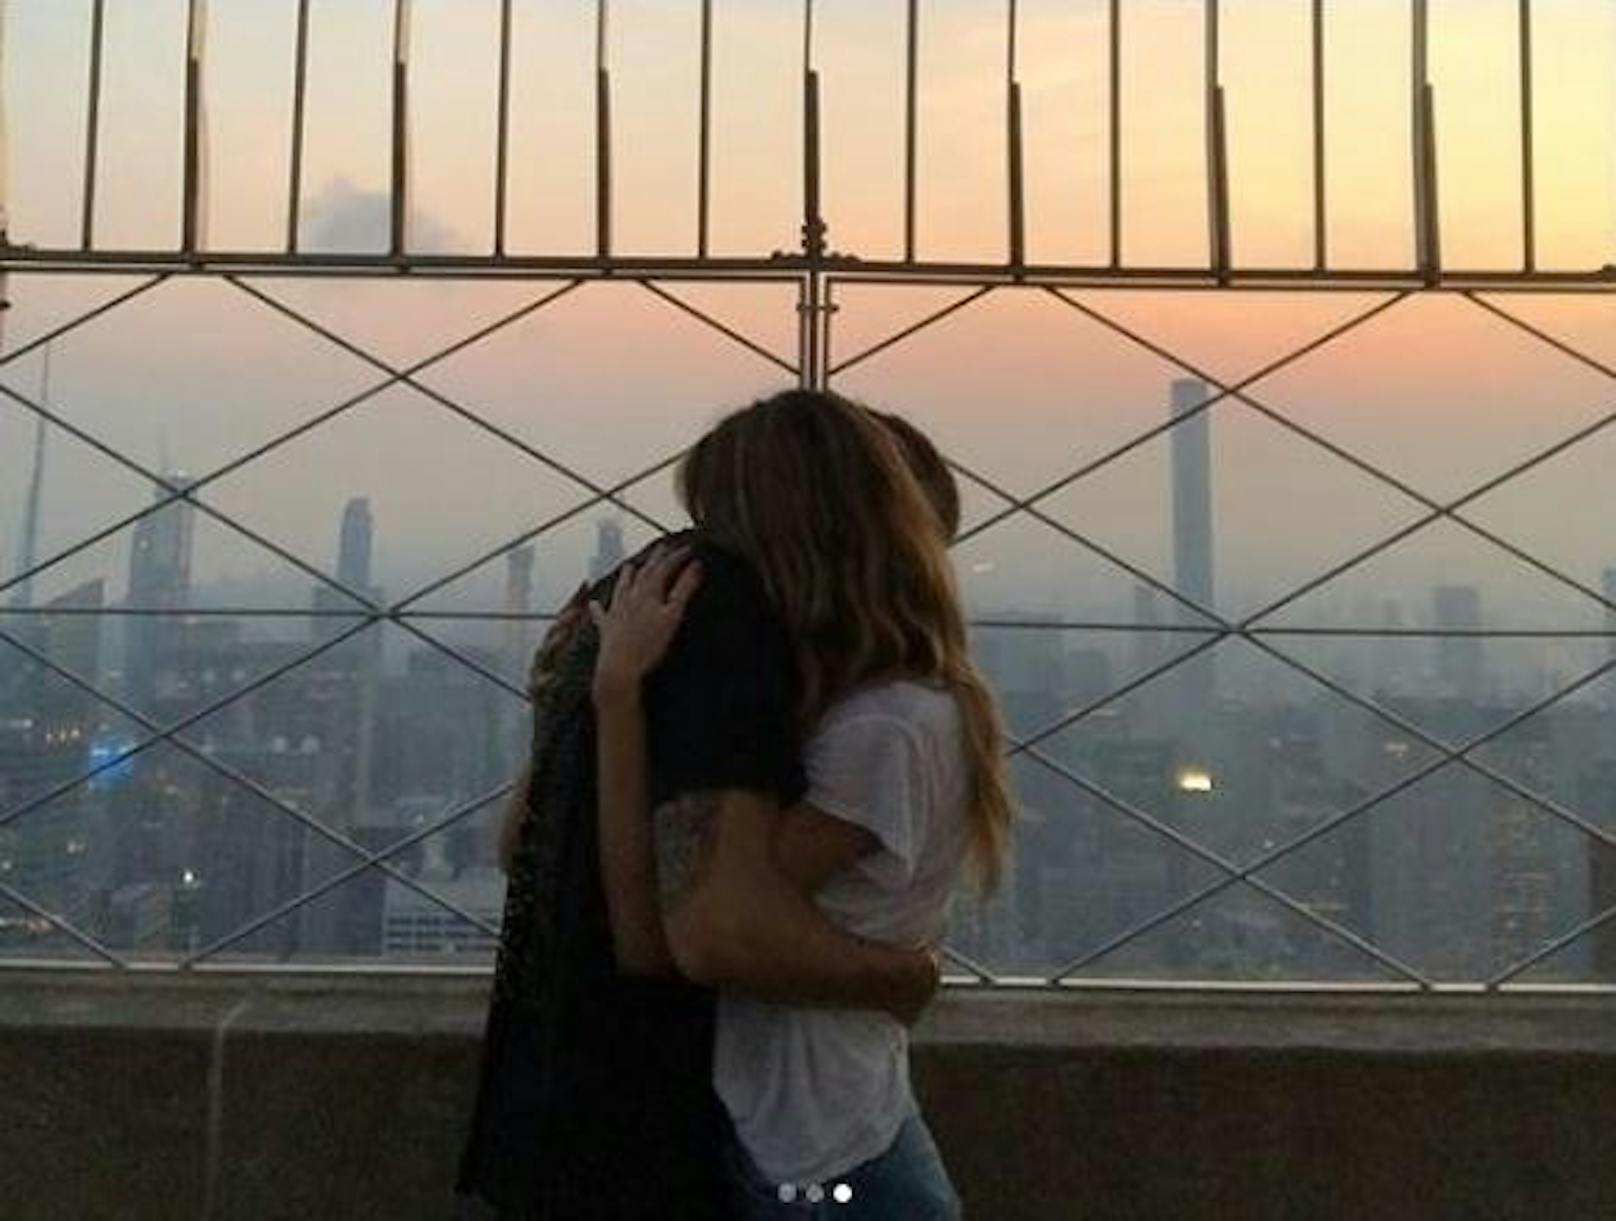 03.07.2018: Ganz alleine, ohne lästige Touristen, genossen Heidi Klum und Tom Kaulitz den Sonnenaufgang vom Empire State Building aus.